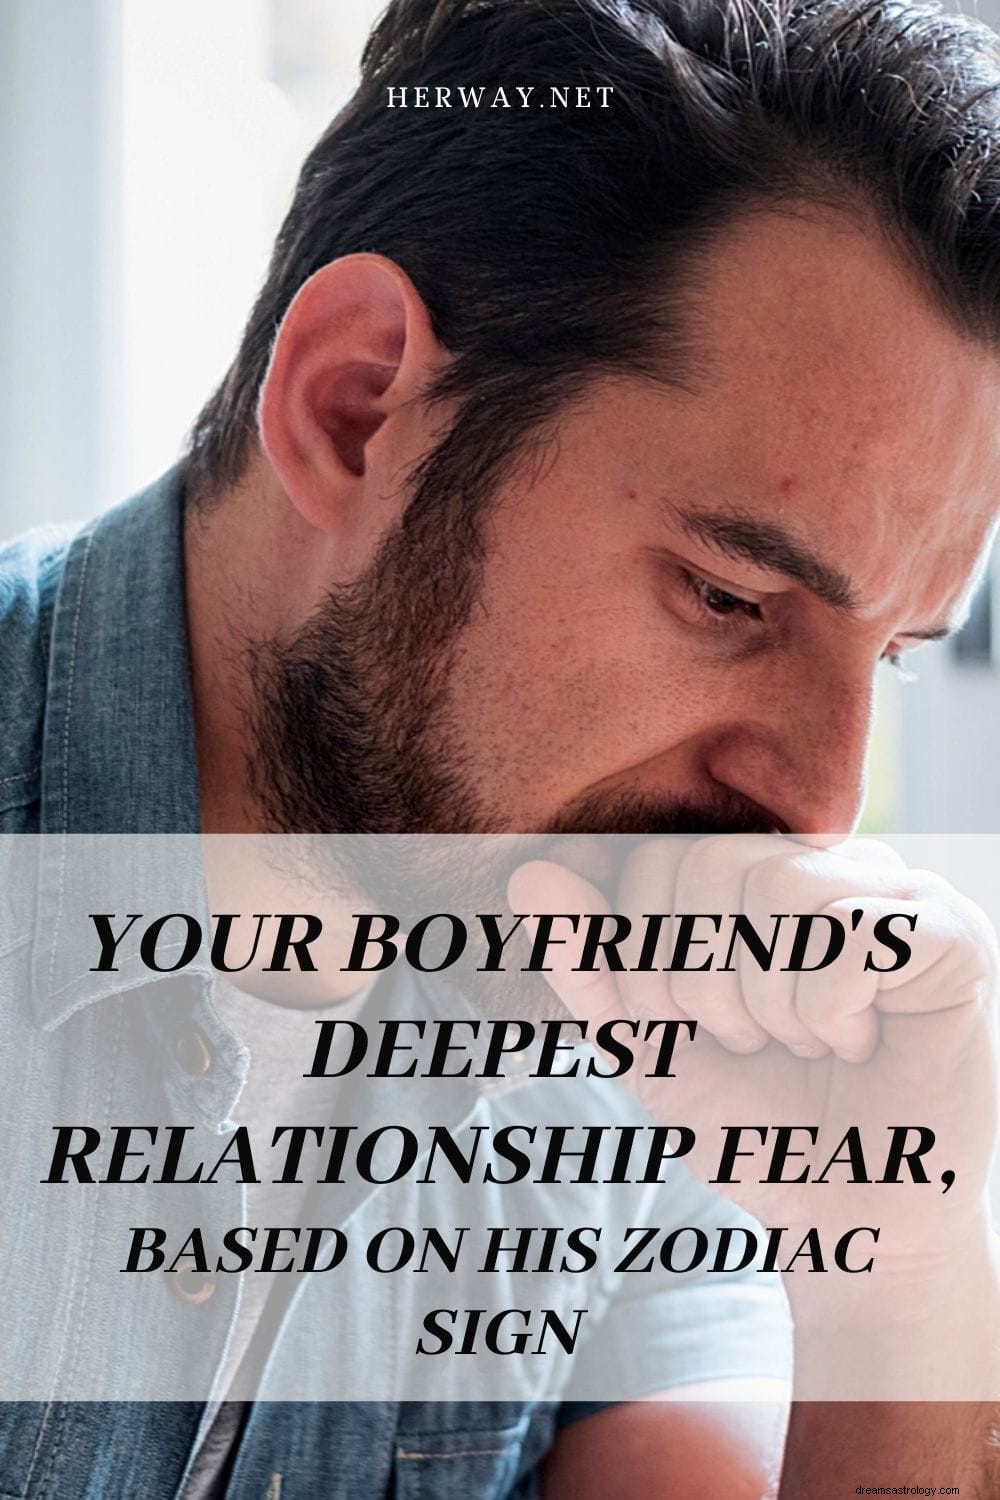 Din pojkväns djupaste rädsla för förhållande, baserat på hans stjärntecken